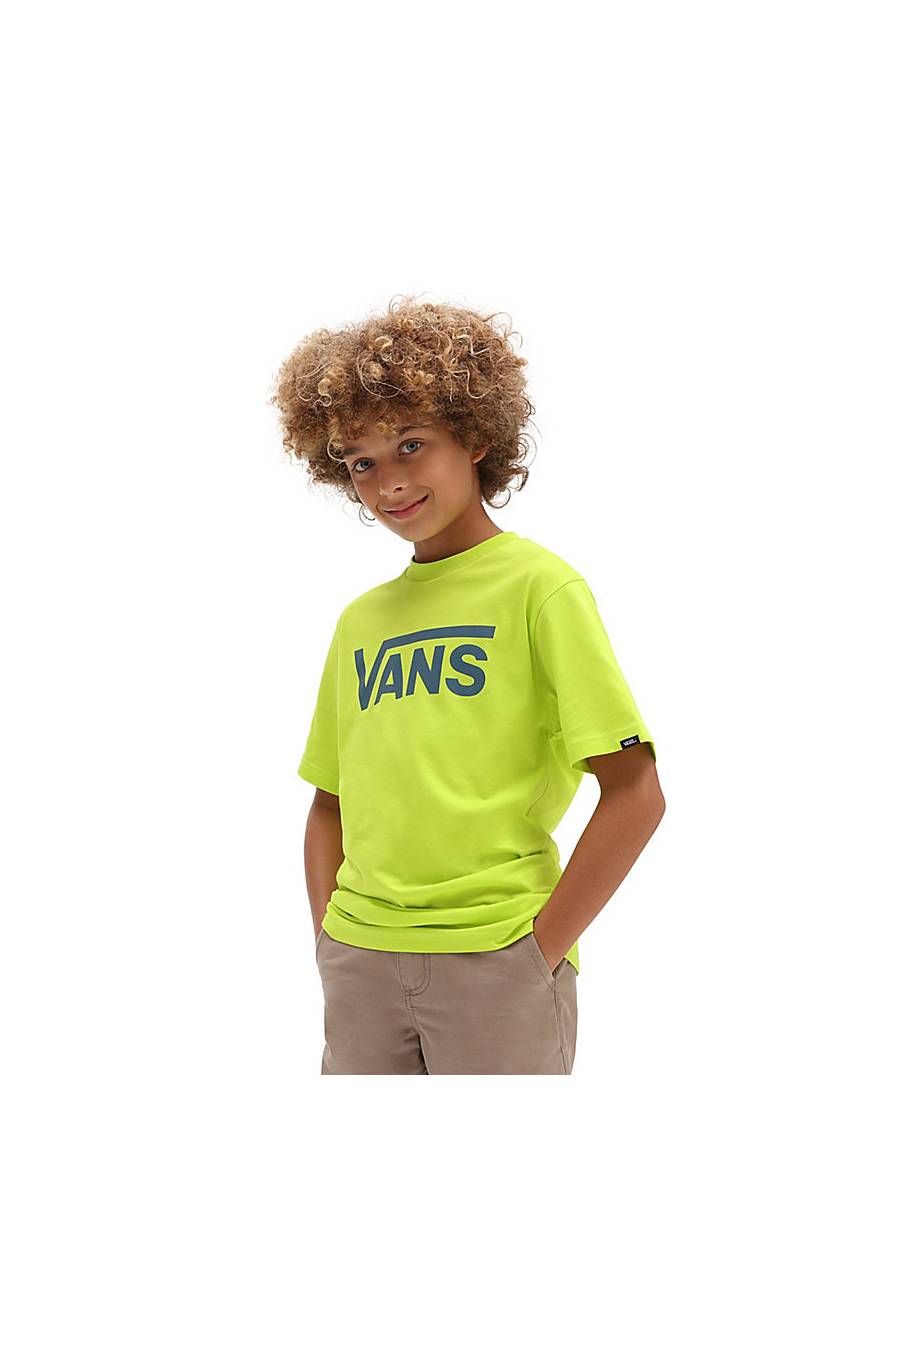 Camiseta Vans Classic Camiseta Vans Classic VN000IVFBUJ1